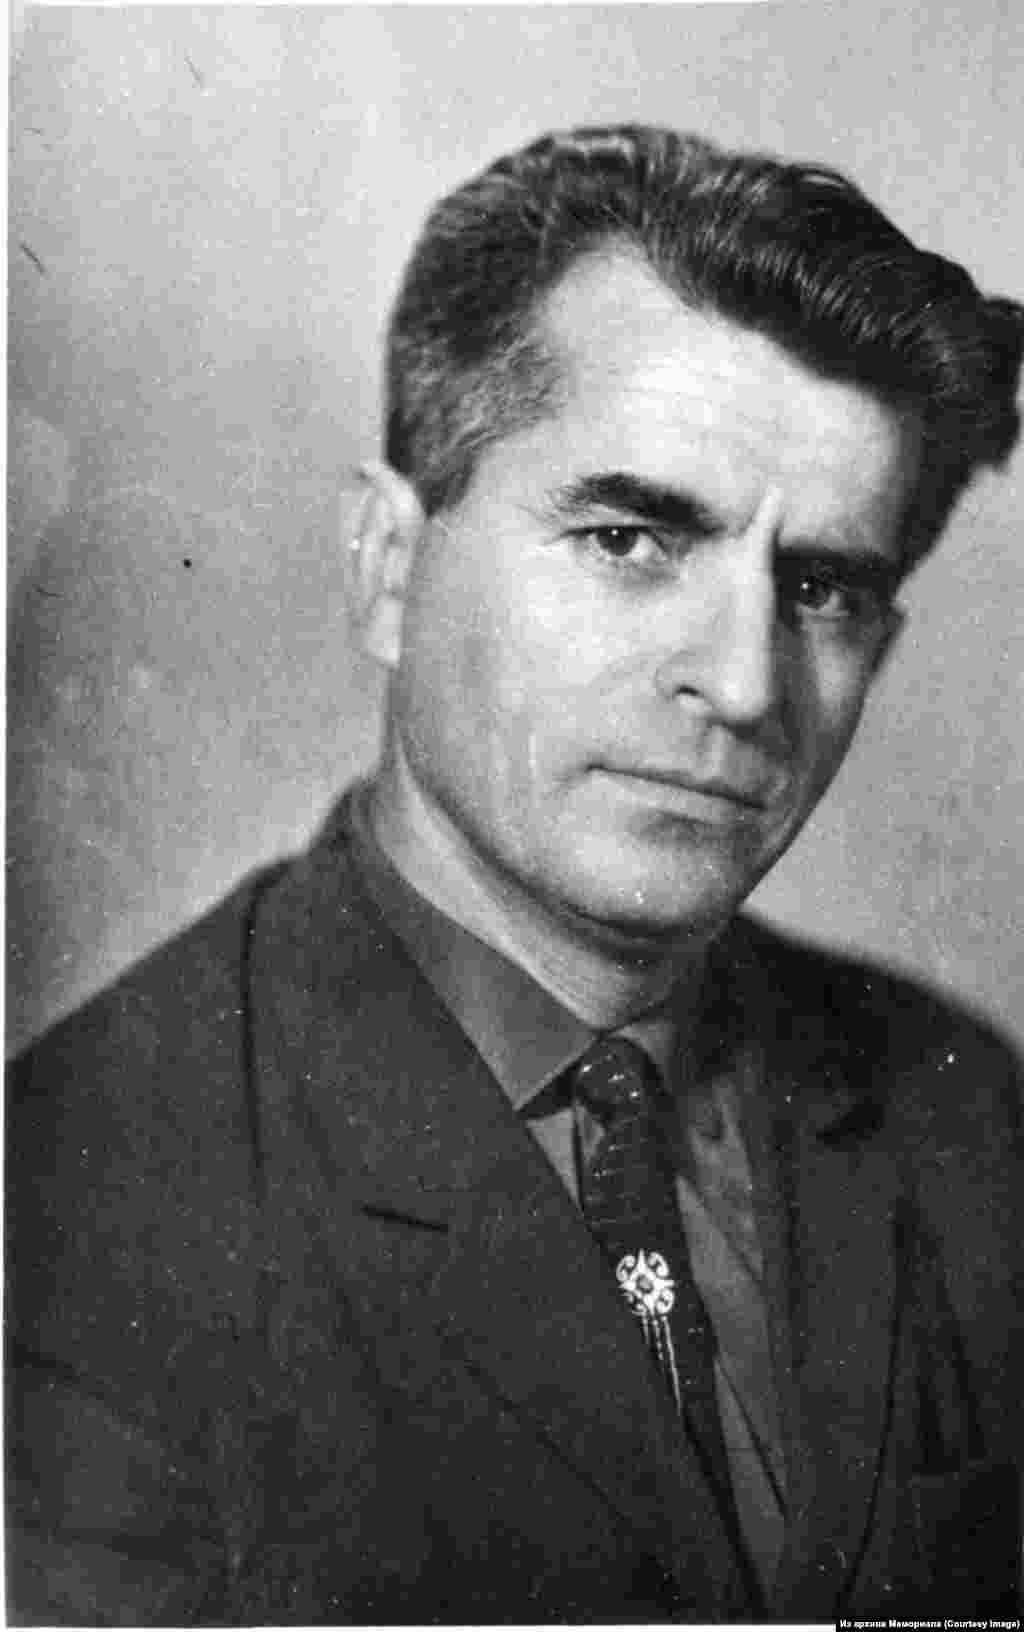 Решат Җәмилев (1931-2002) -- Кырымтатар хәрәкәтенең иң актив әгъзаларыннан берсе. Өч тапкыр хөкем ителгән сәяси тоткын. Башта 1967 елда, икенче мәртәбә 1972-1975 елларда, өченче мәртәбә 1979-1982 елларда төрмәдә утыра.